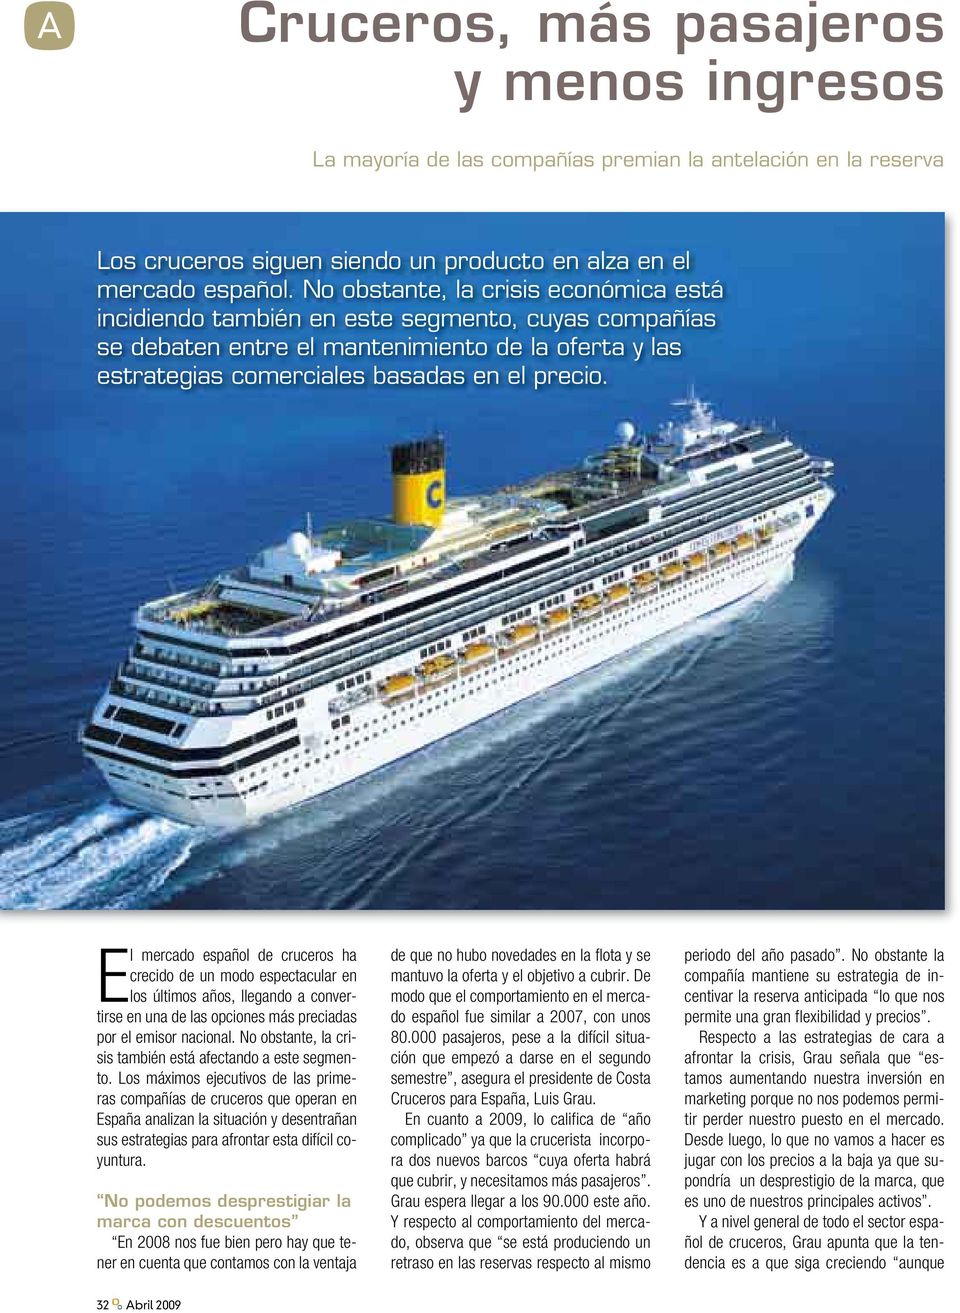 El mercado español de cruceros ha crecido de un modo espectacular en los últimos años, llegando a convertirse en una de las opciones más preciadas por el emisor nacional.